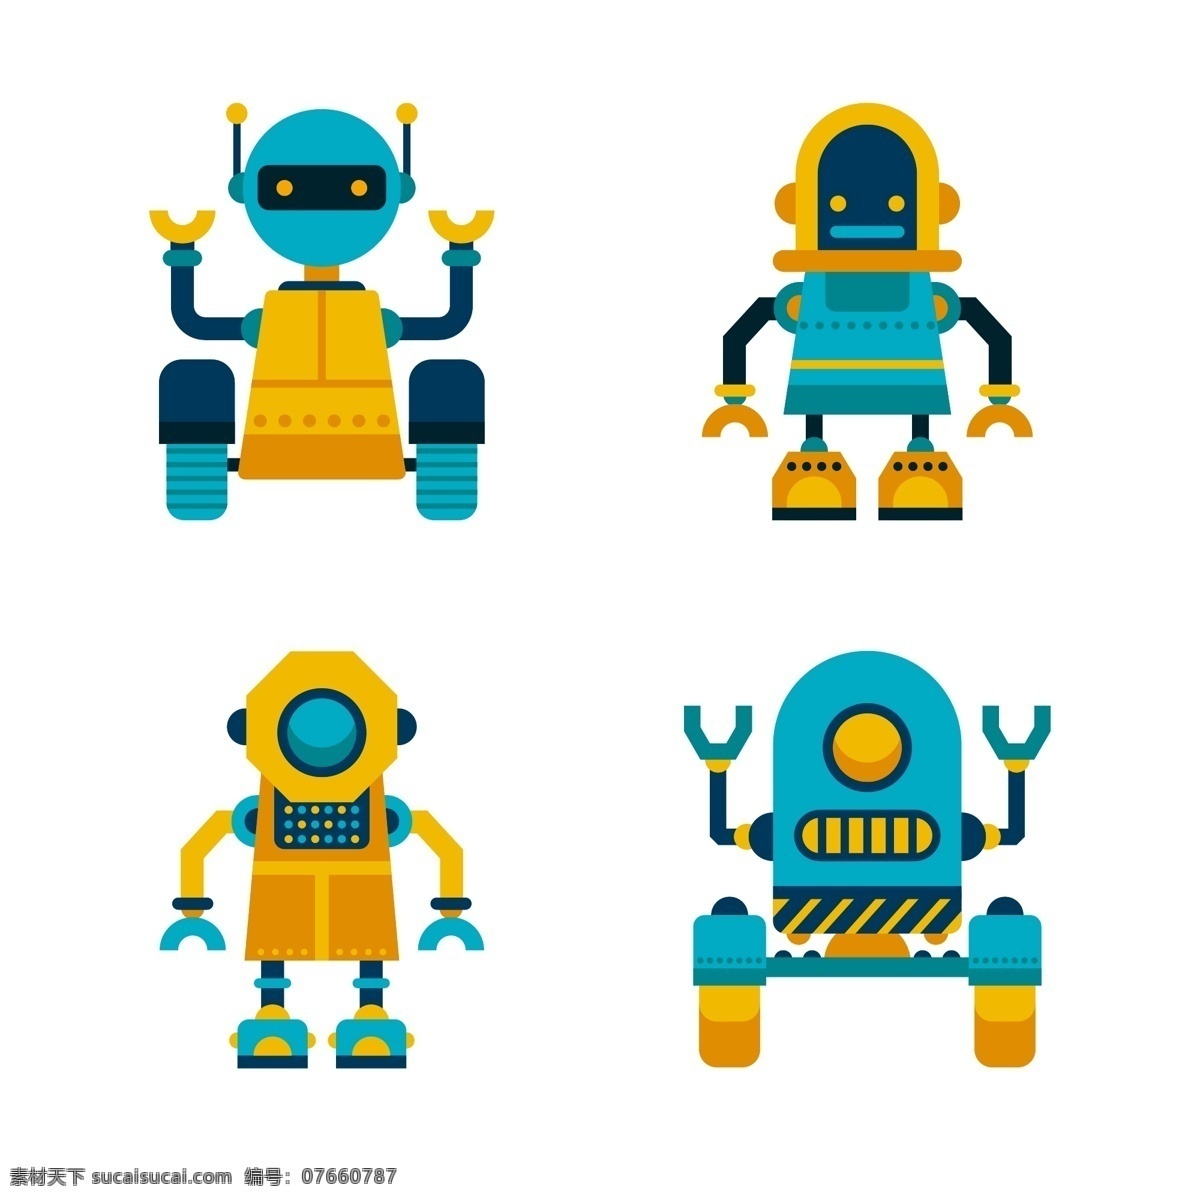 机器人文化 机器人语言 机器人展会 机器人智能 科技 机器人展览 机器人海报 机器人表演 智能机器人 未来机器人 机器人舞蹈 机器人语音 机器人展出 机器人喷绘 机器人设计 机器人背景 卡通设计